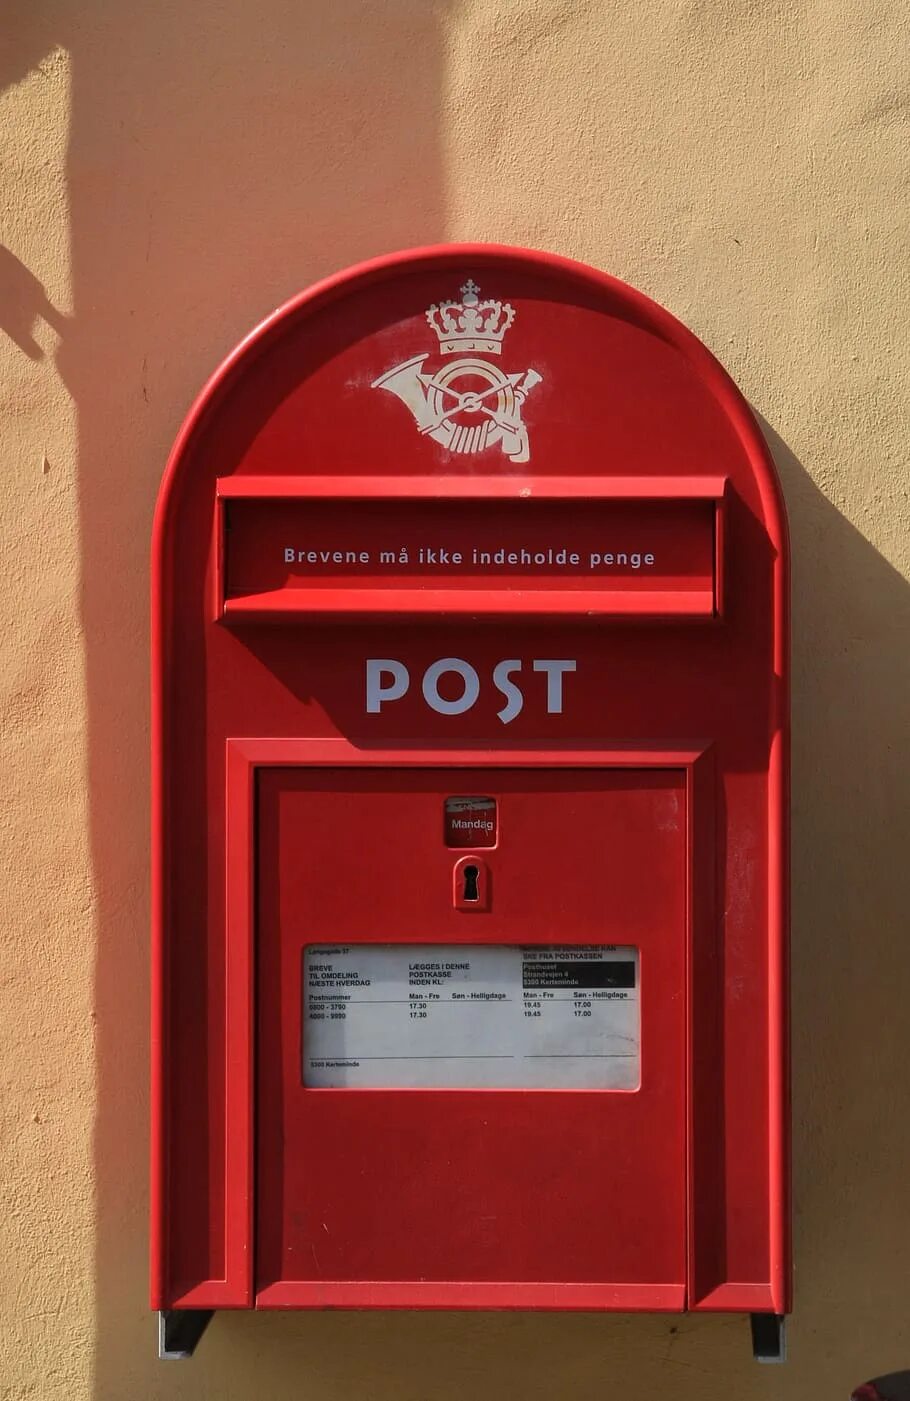 Пост post. Почтовый ящик. Красный почтовый ящик. Почта красный ящик. Почтовые ящики для многоквартирных домов.